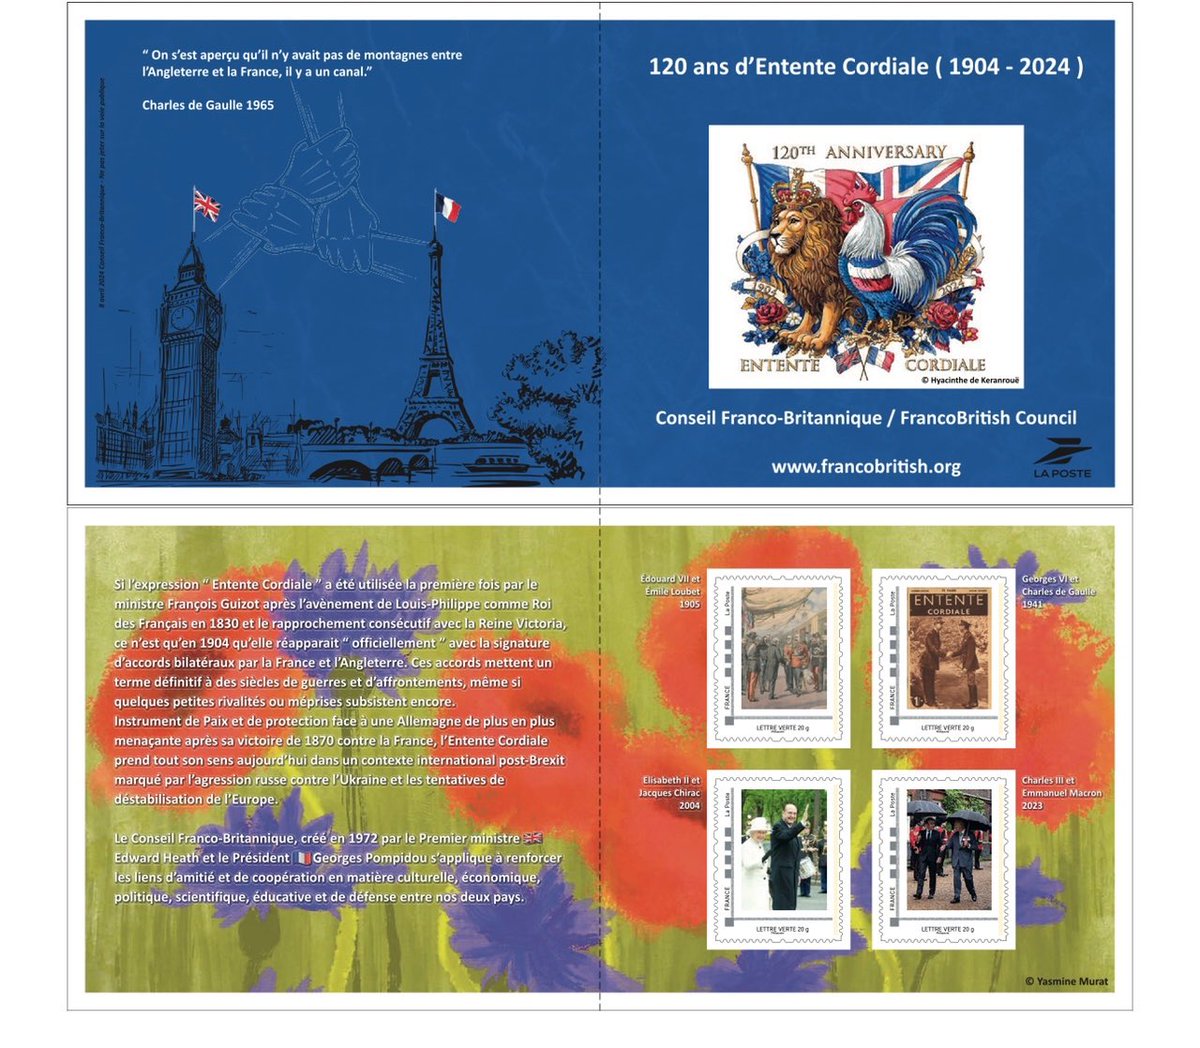 Aujourd'hui, pour commémorer les 120 ans de l'Entente Cordiale, le Conseil franco-britannique a publié des timbres commémoratifs dans le cadre d'un projet dirigé par @senateurJGM